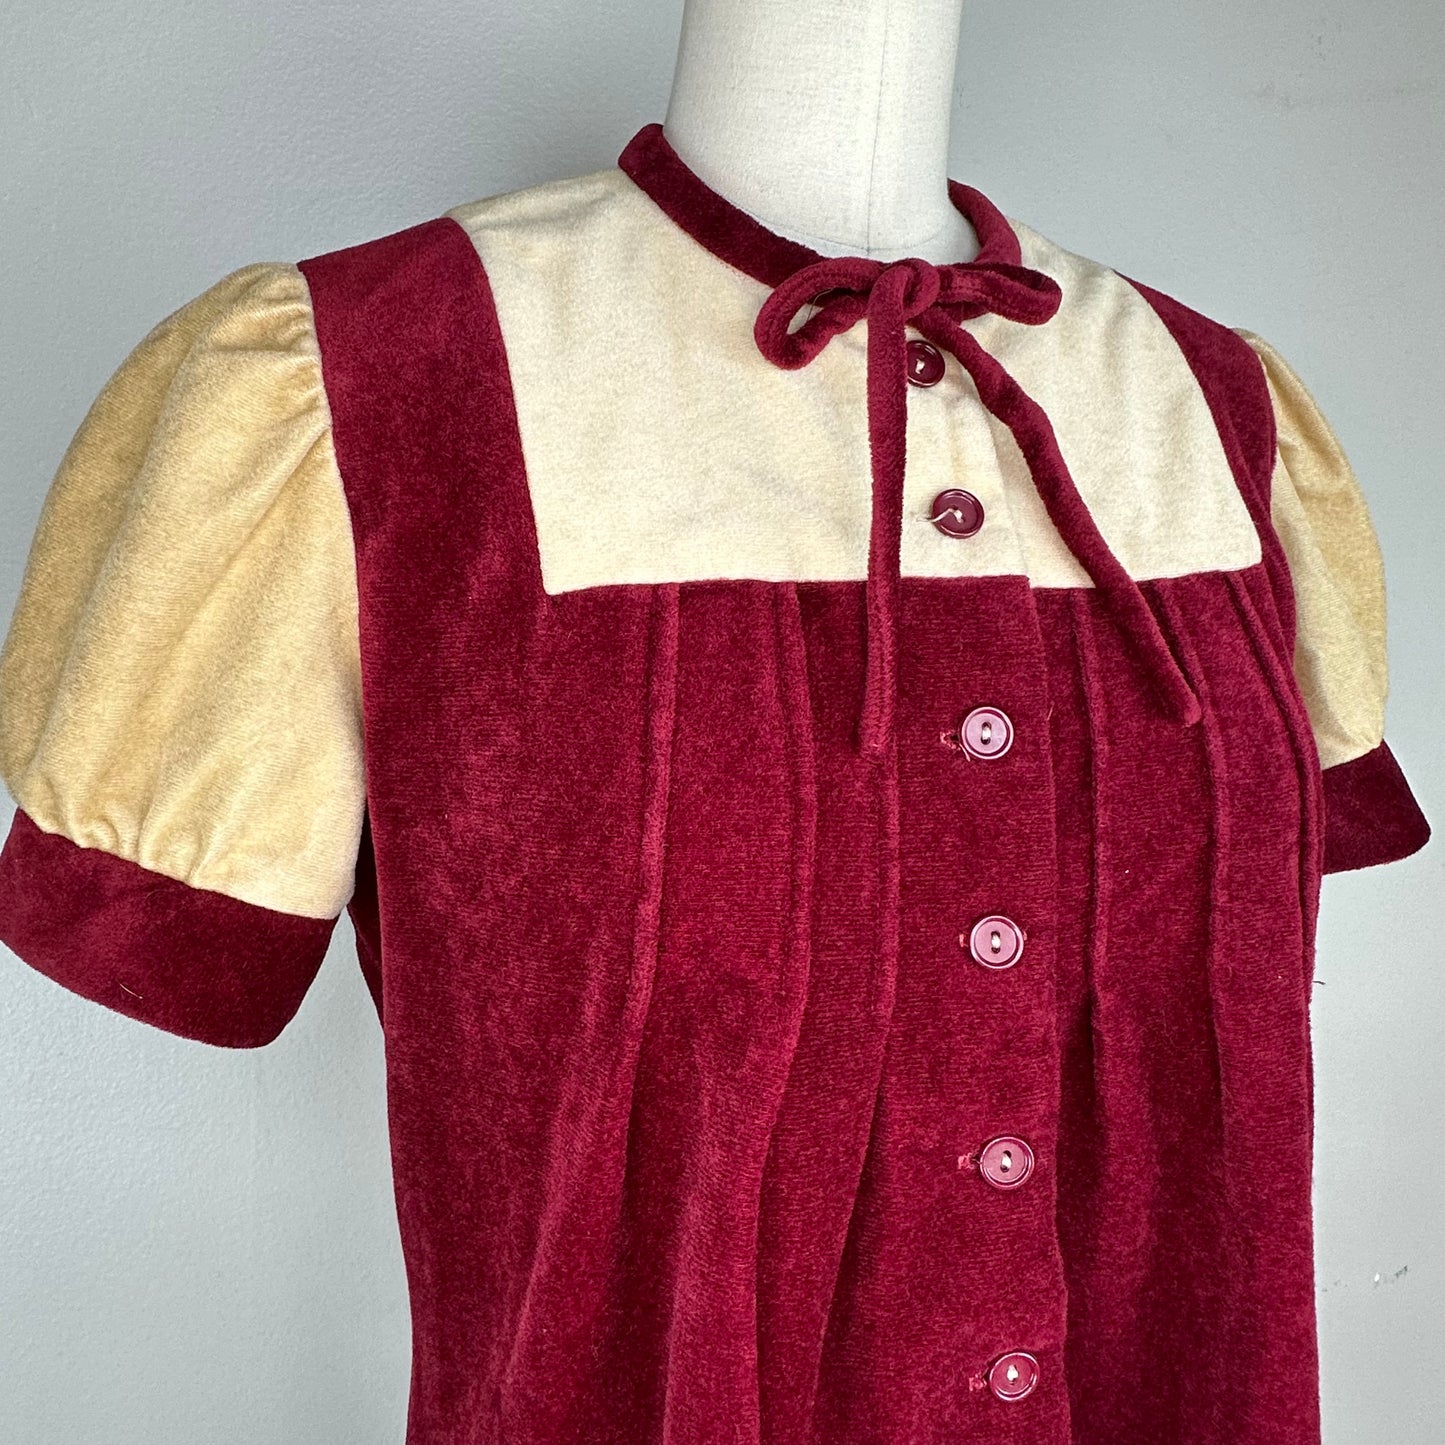 1970s Velour Mini Dress, Size Small